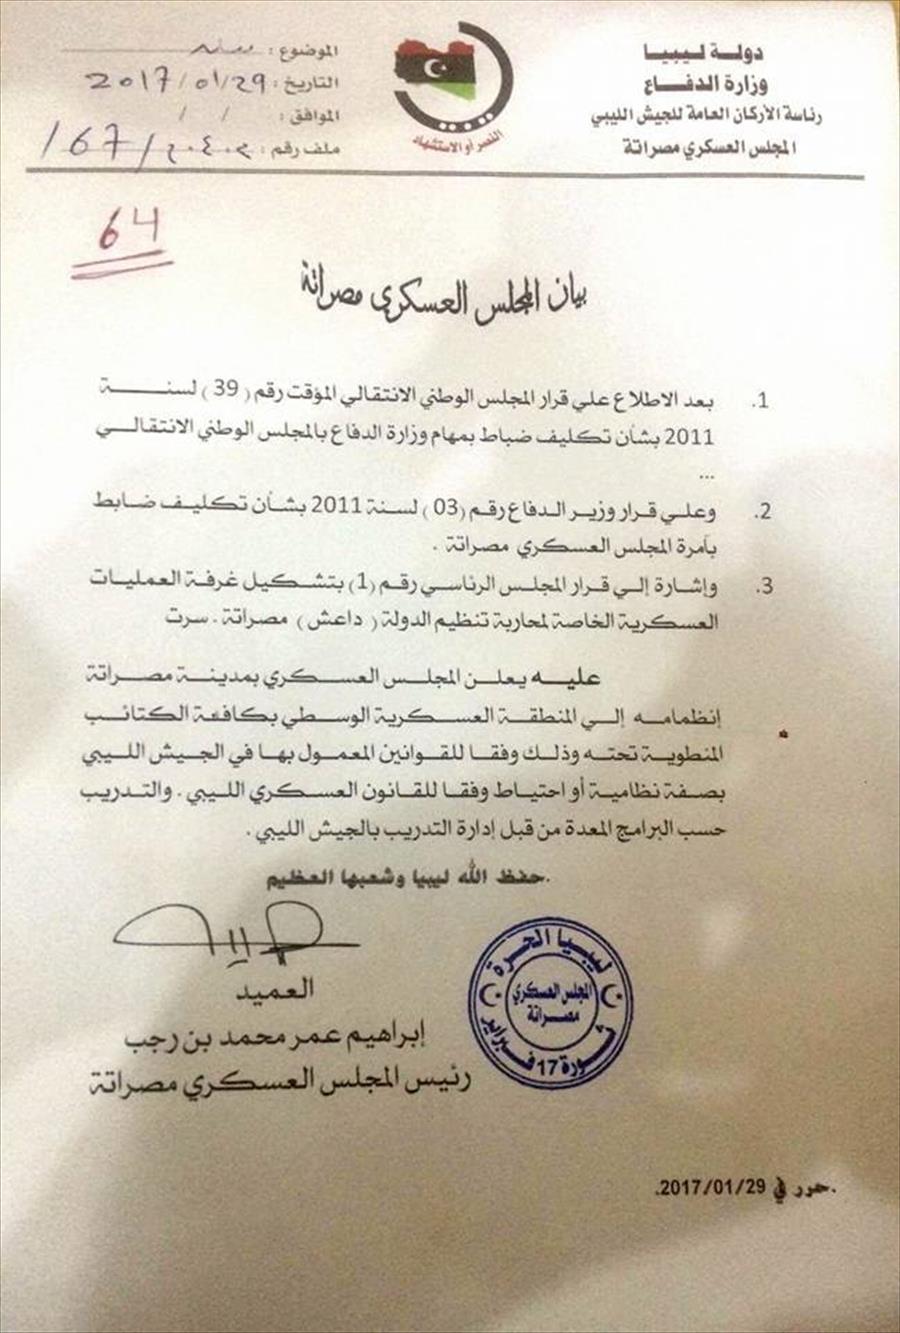 المجلس العسكري مصراتة يعلن انضمامه للمنطقة العسكرية الوسطى